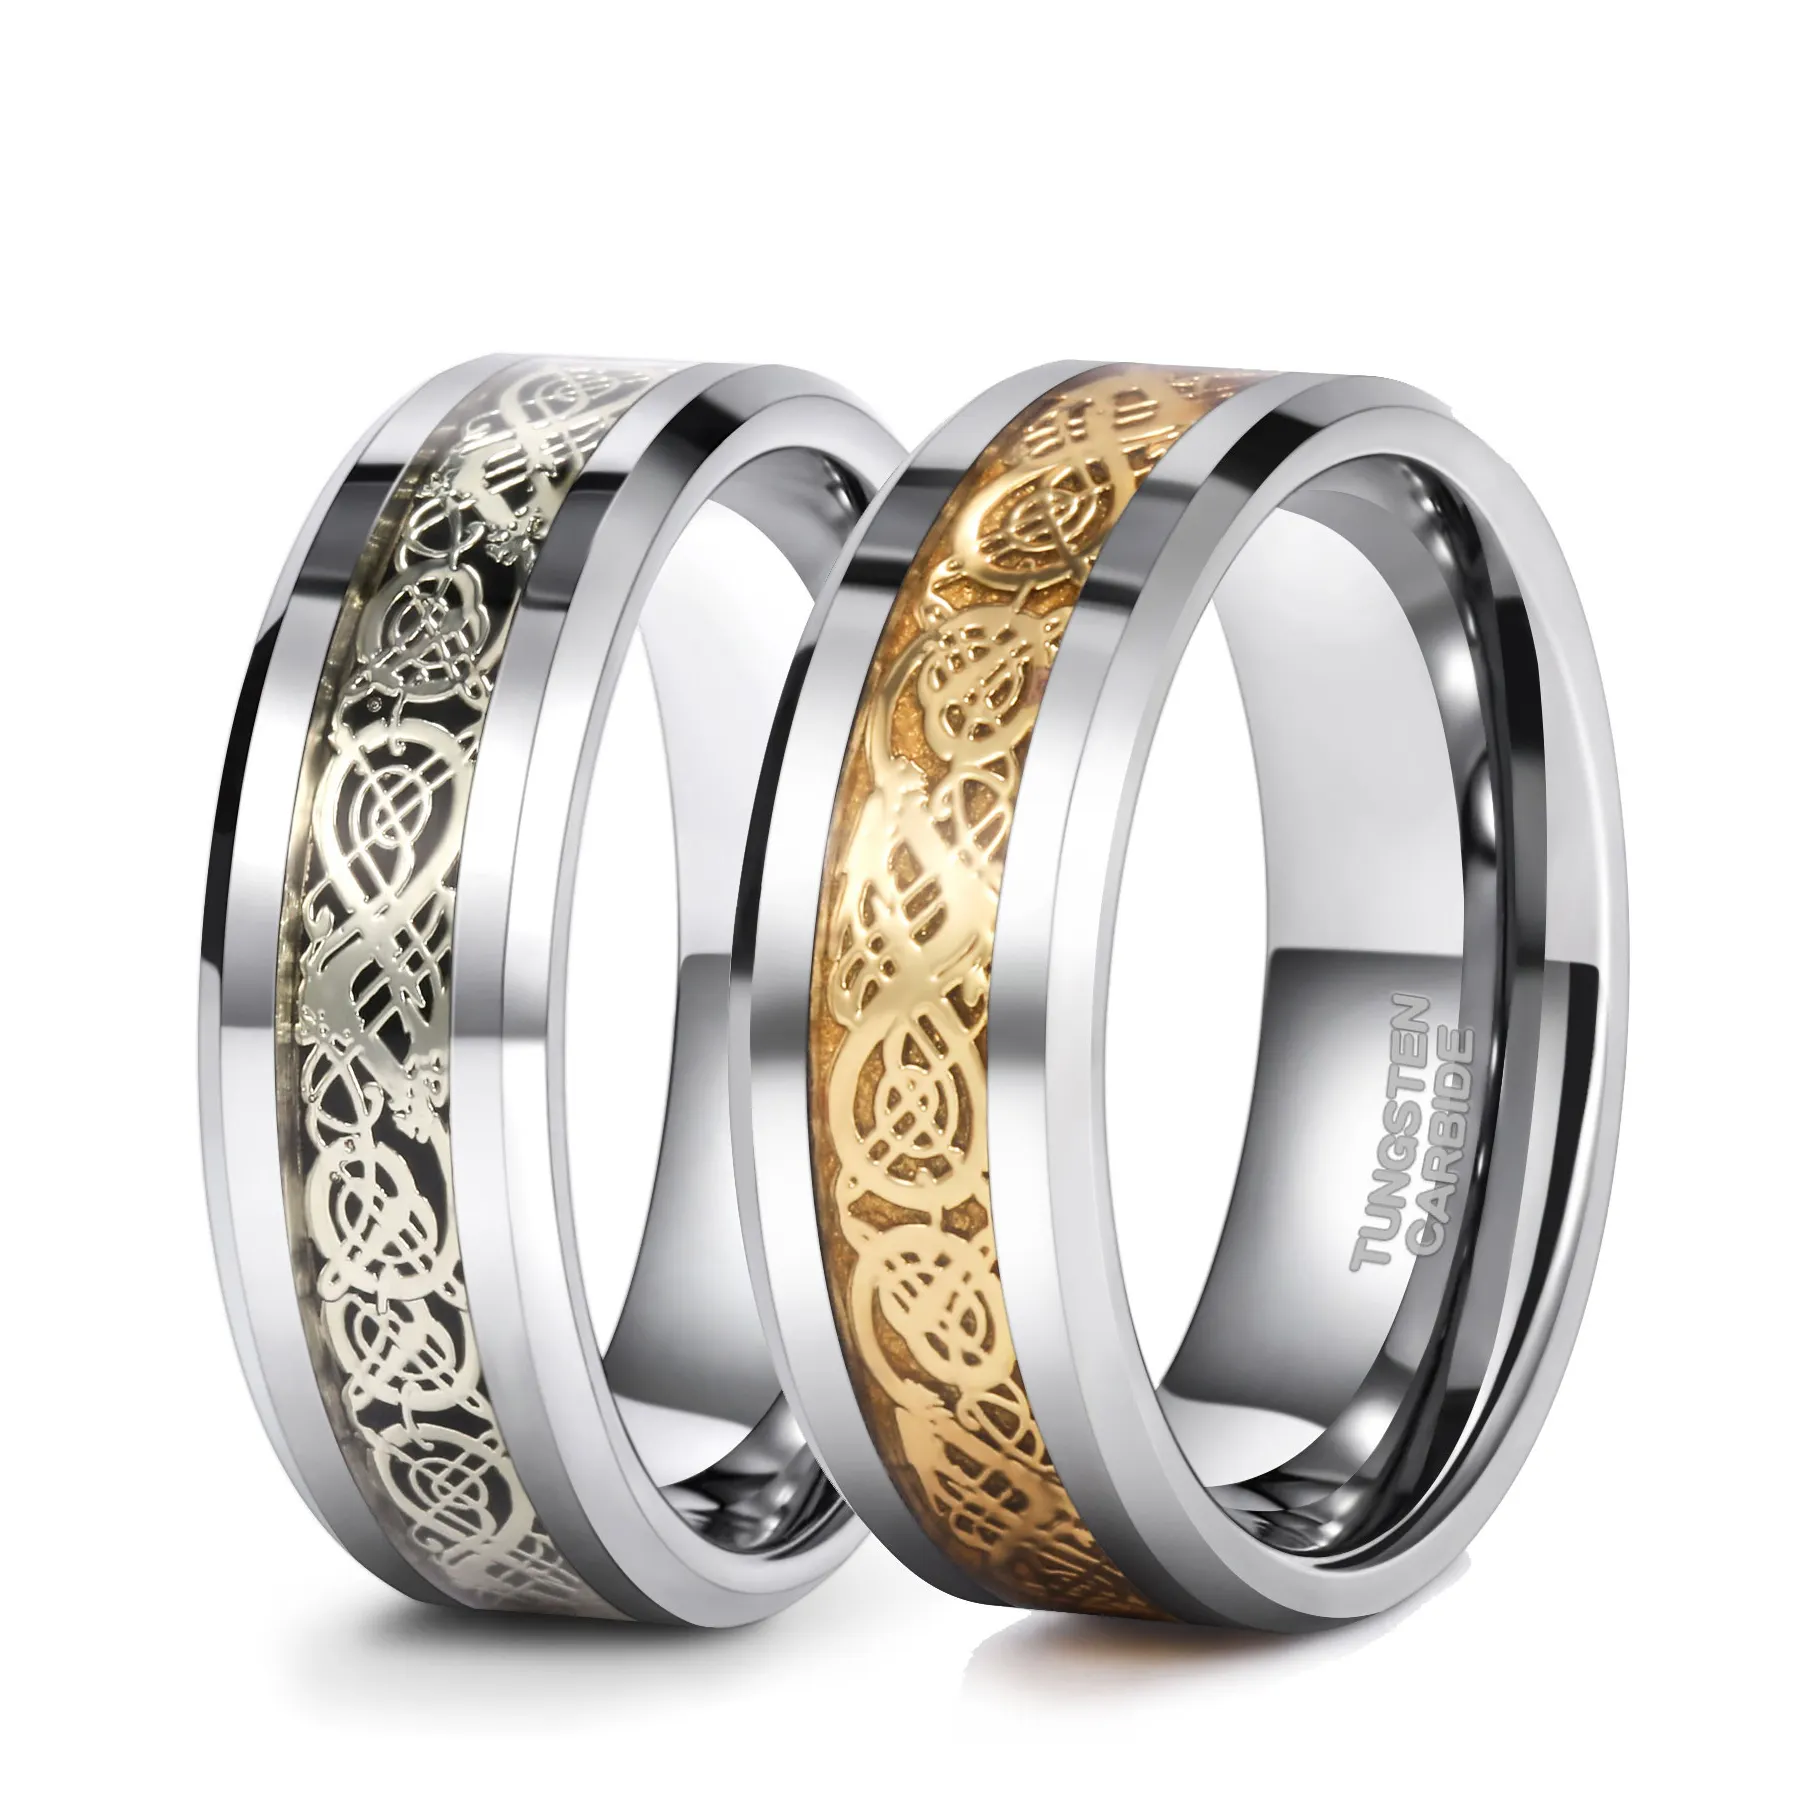 Somen 8Mm Zilver/Goud Kleur Tungsten Carbide Ring Mannen Keltische Draak Inlay Vrouwen Wedding Ring Wolfraam Ringen sieraden